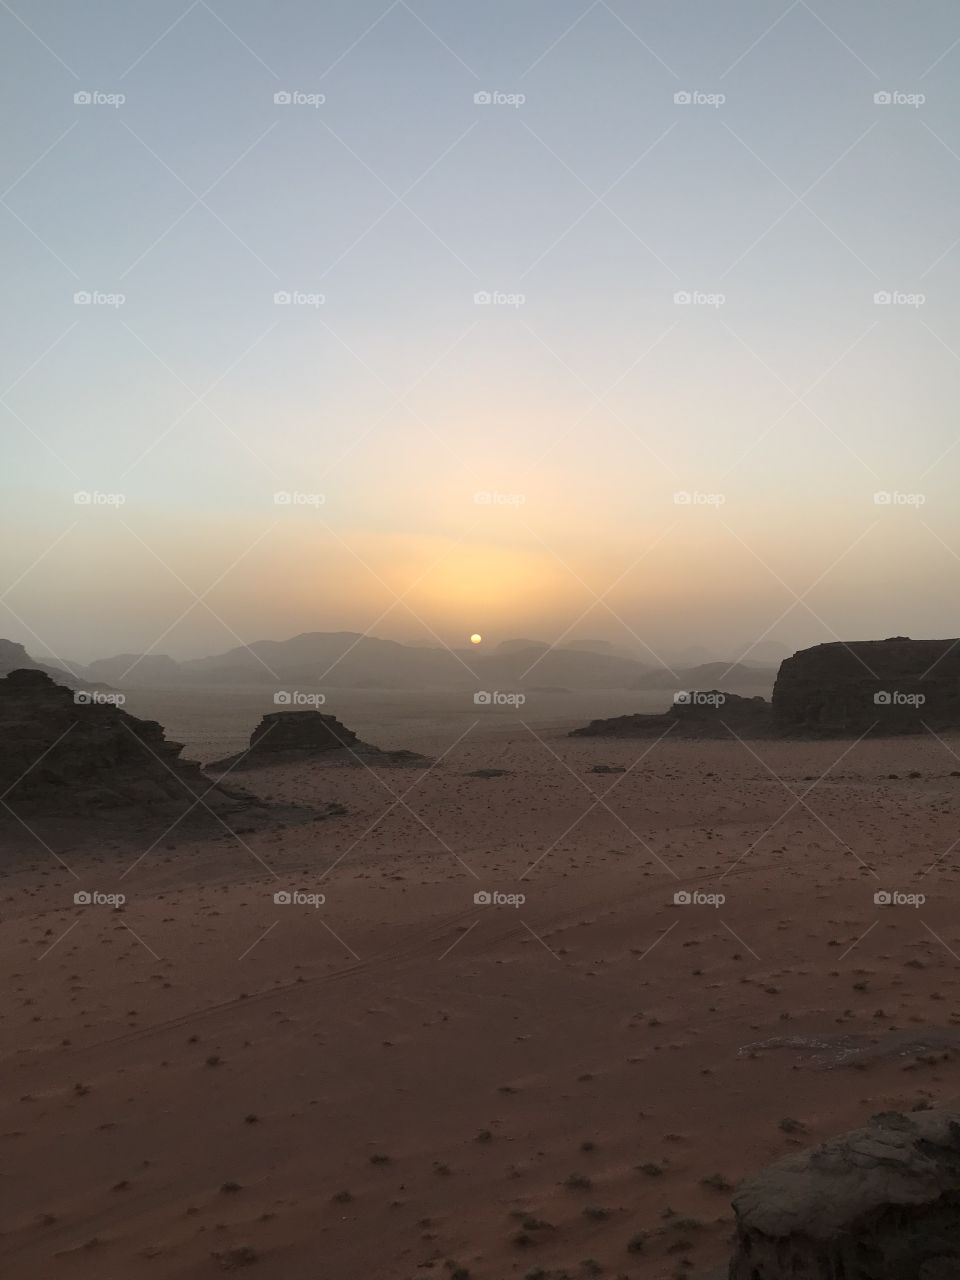 Sunset at Wadi Rum, Jordan 